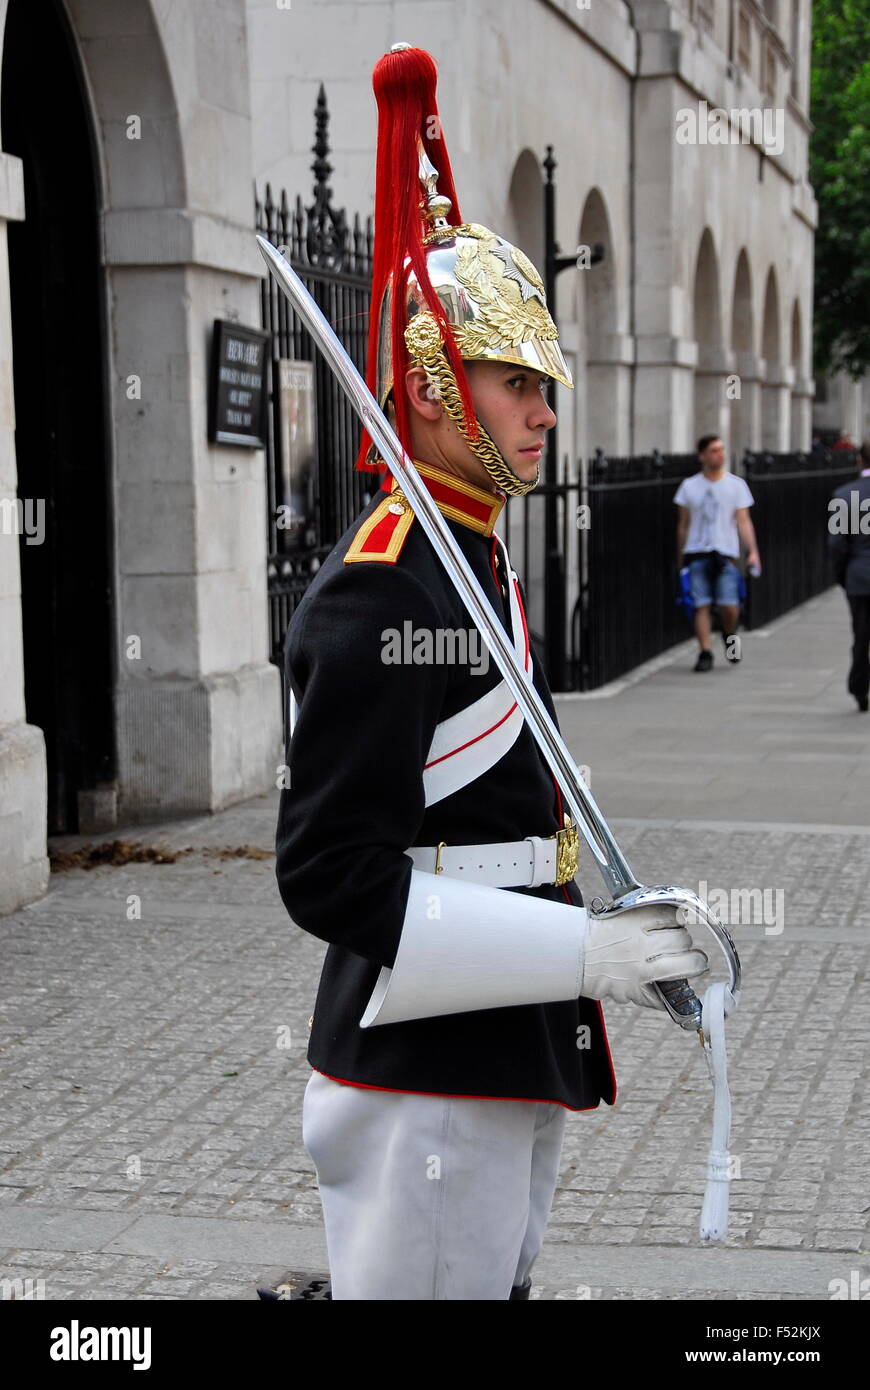 Royal Horse Guard sur service de sentinelle à Londres, Angleterre, RU Banque D'Images